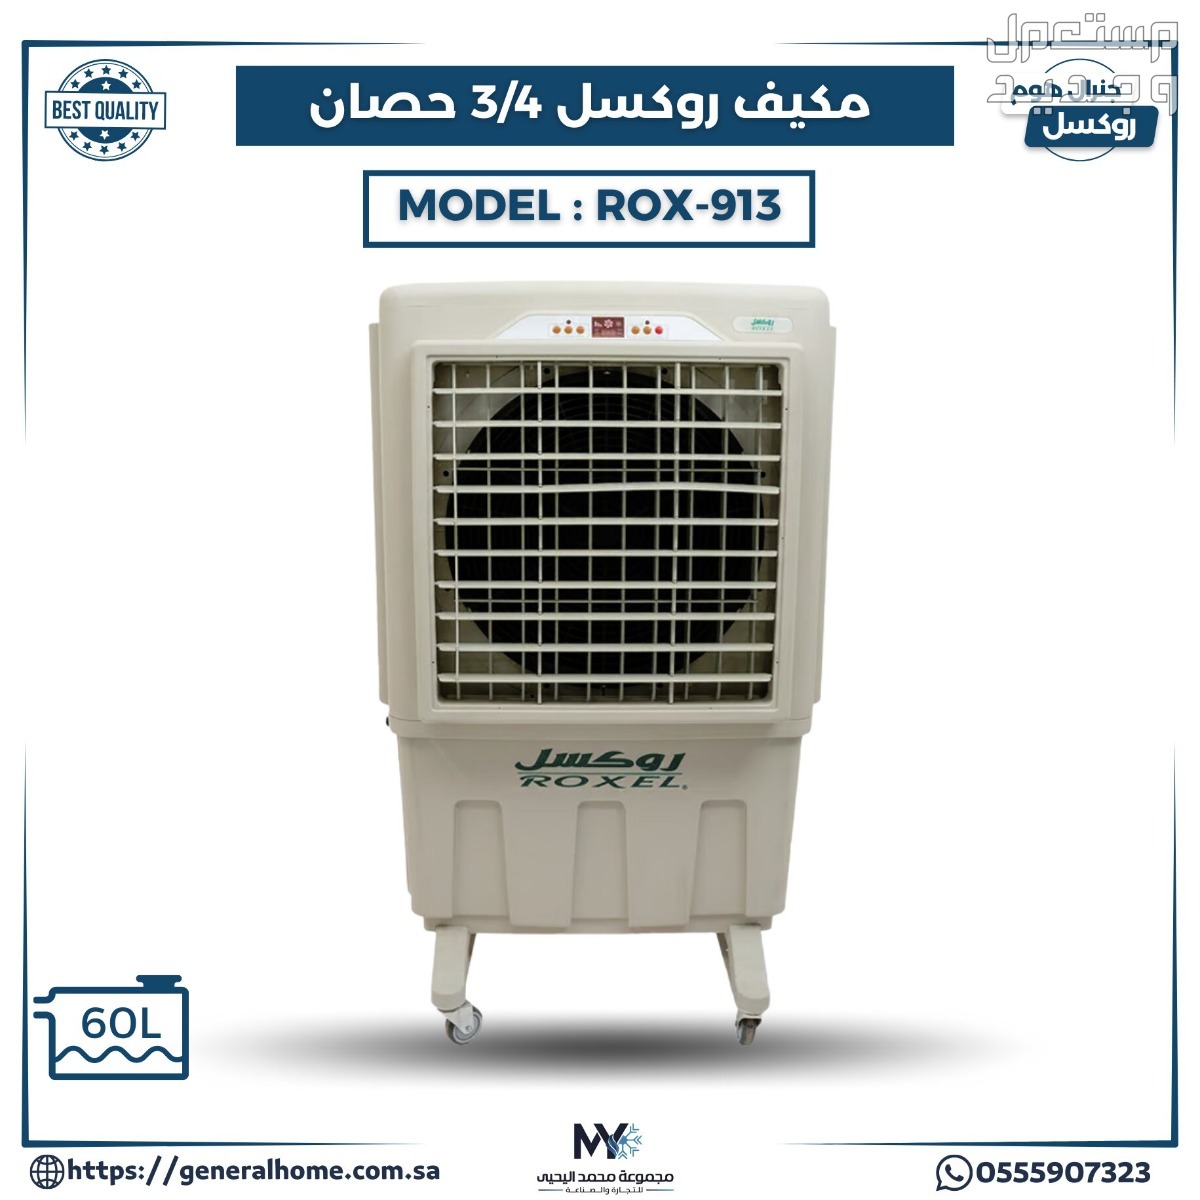 عروض اليحيى للمكيفات بالأنواع والمواصفات والصور والأسعار في ليبيا مكيف روكسل 3/4 حصان موديل ROX-913